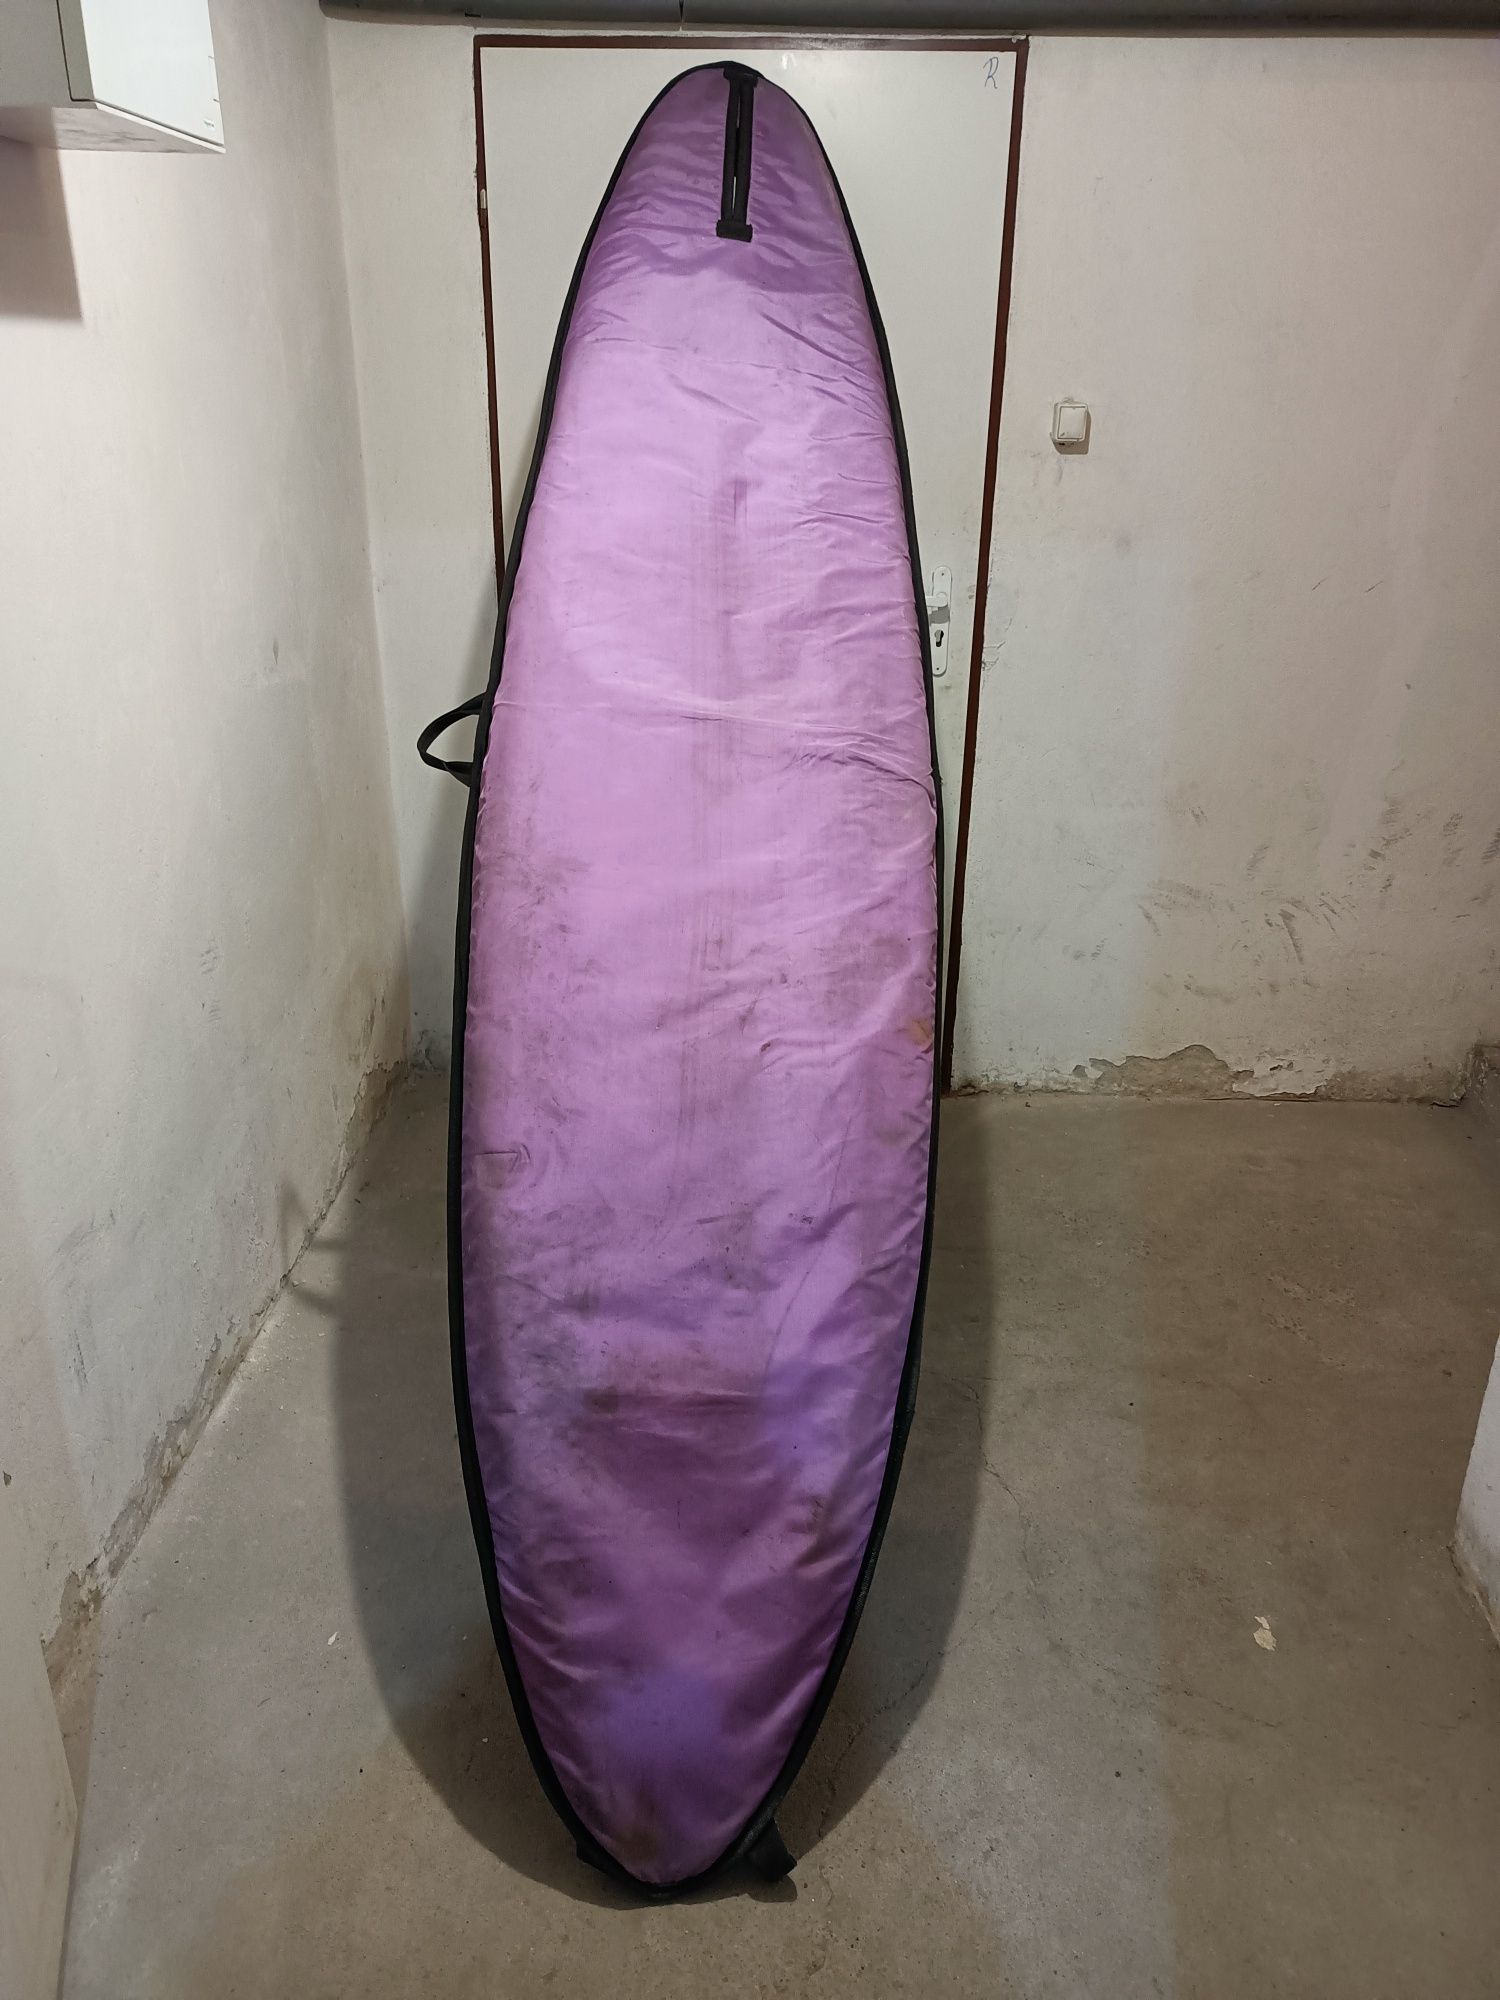 Pokrowiec na deskę windsurfingową